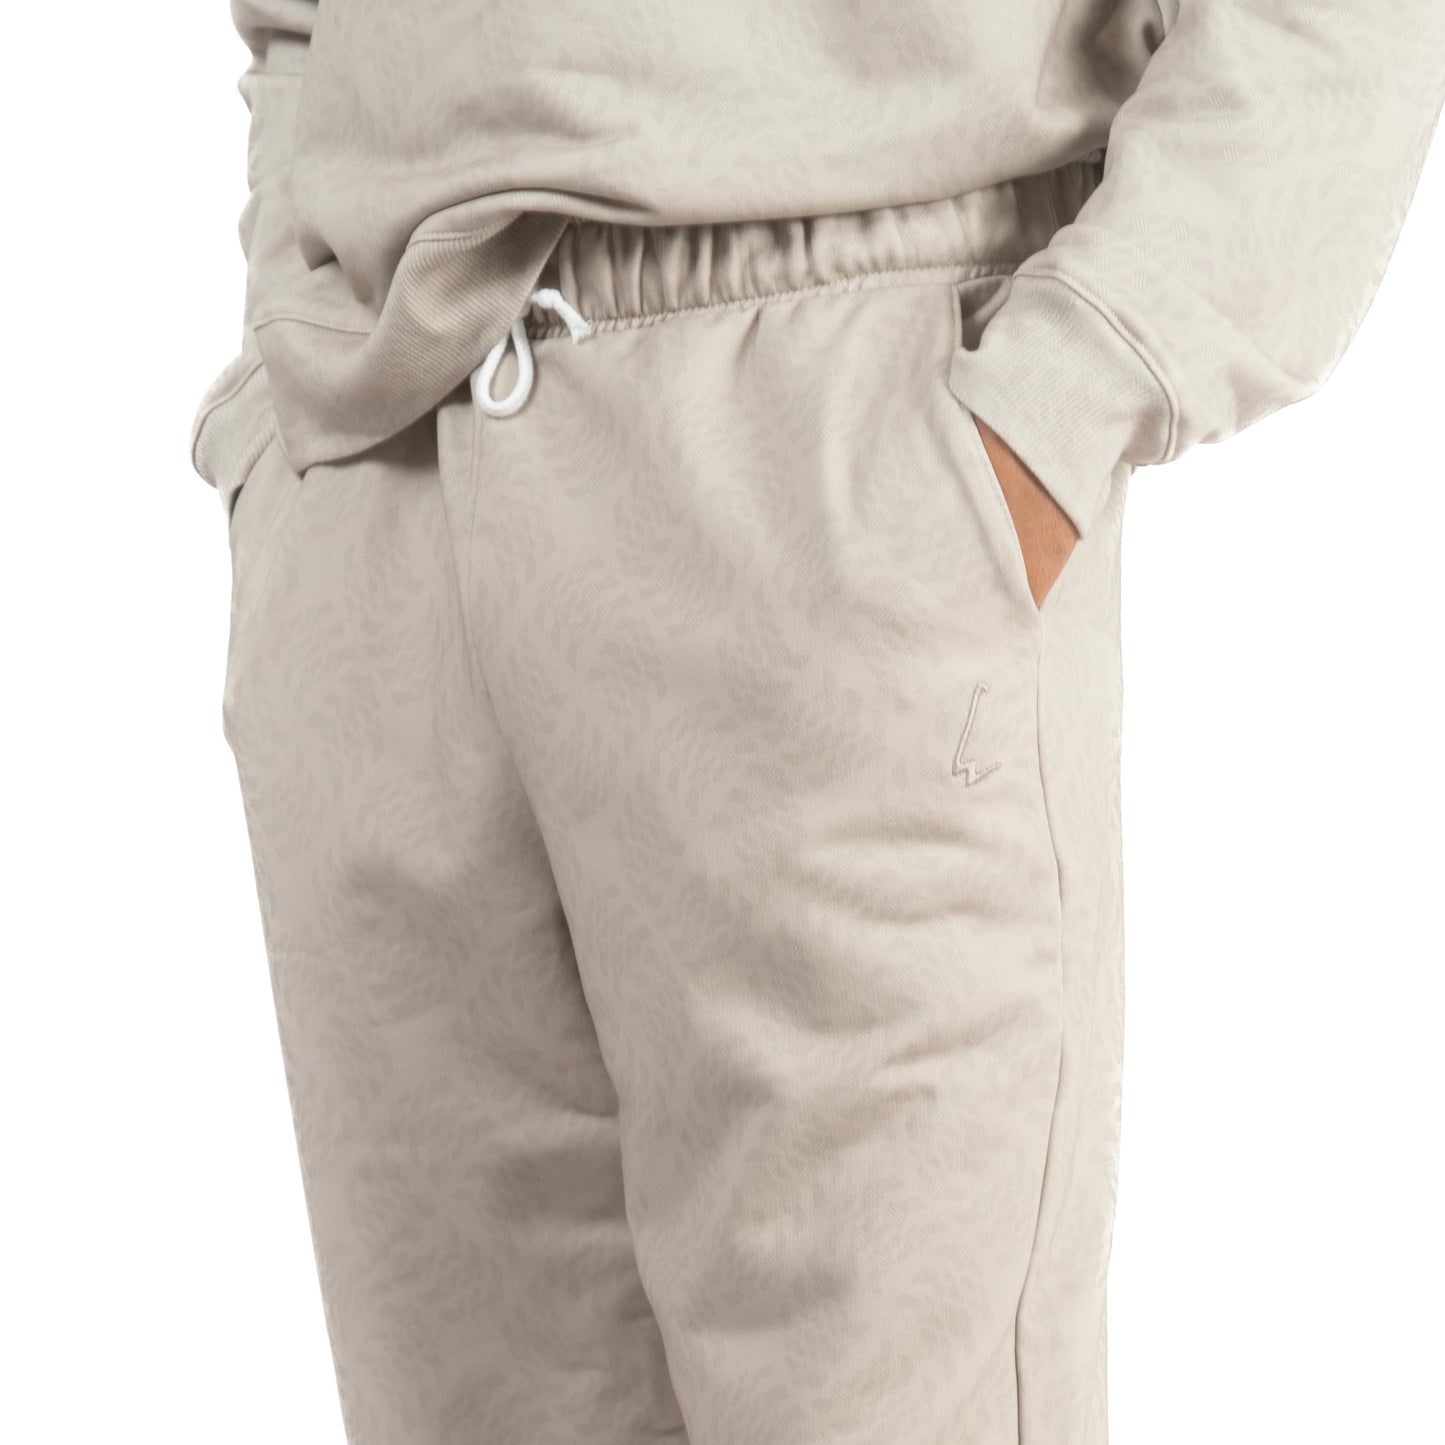 lucewear: homme portant un sweatshirt et un pantalon de jogging beige